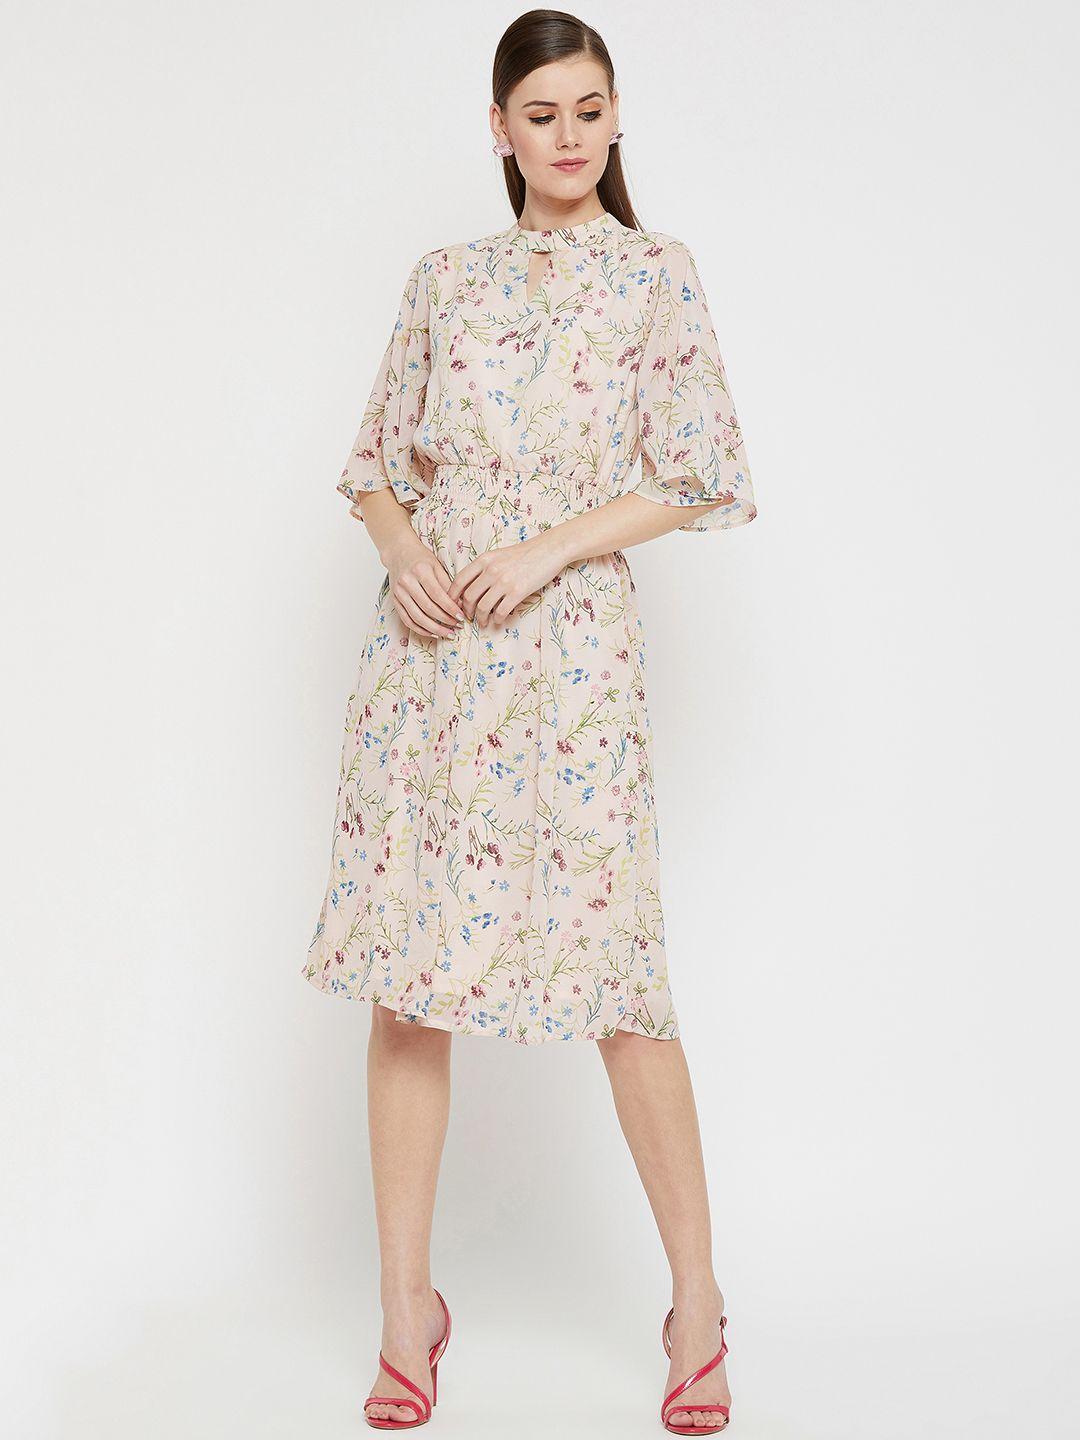 carlton london women off-white floral print drop-waist dress